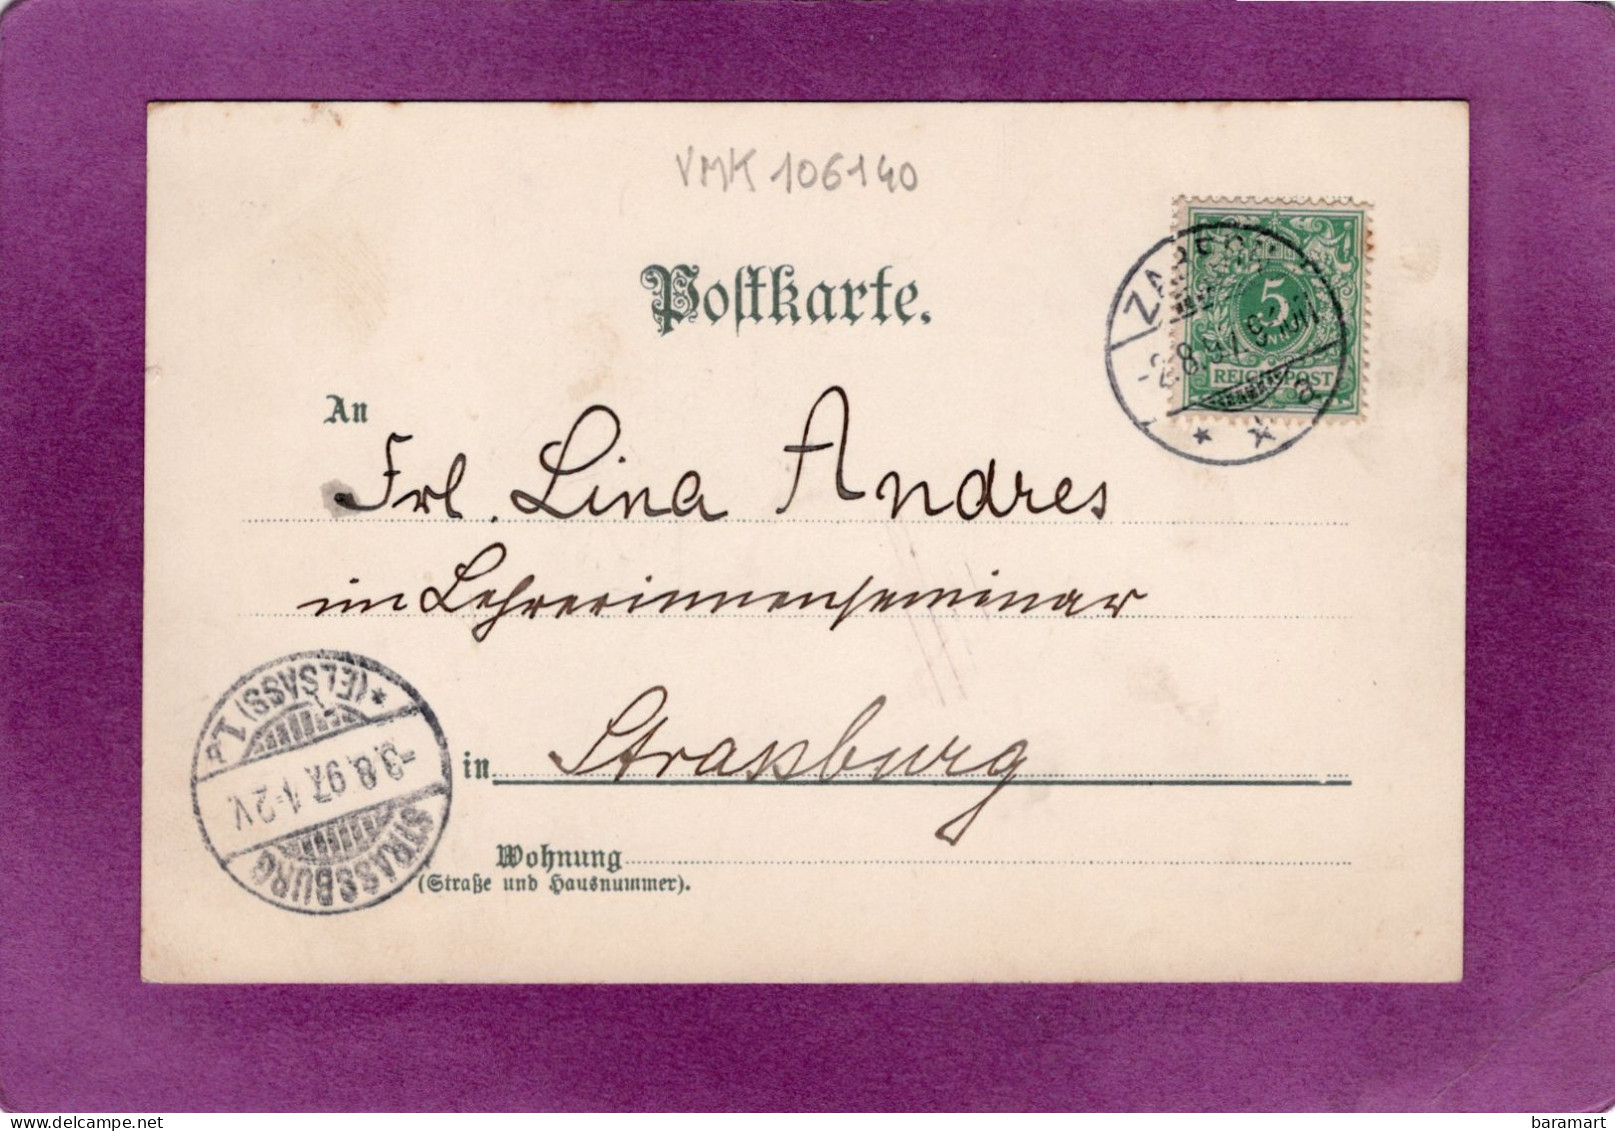 57 67 68 Elsass Lothr. Postkarte 1 Série N° 6 Femme Avec Un Garçon Et Un Petite Fille En Costume  Datée 1897 - Alsace